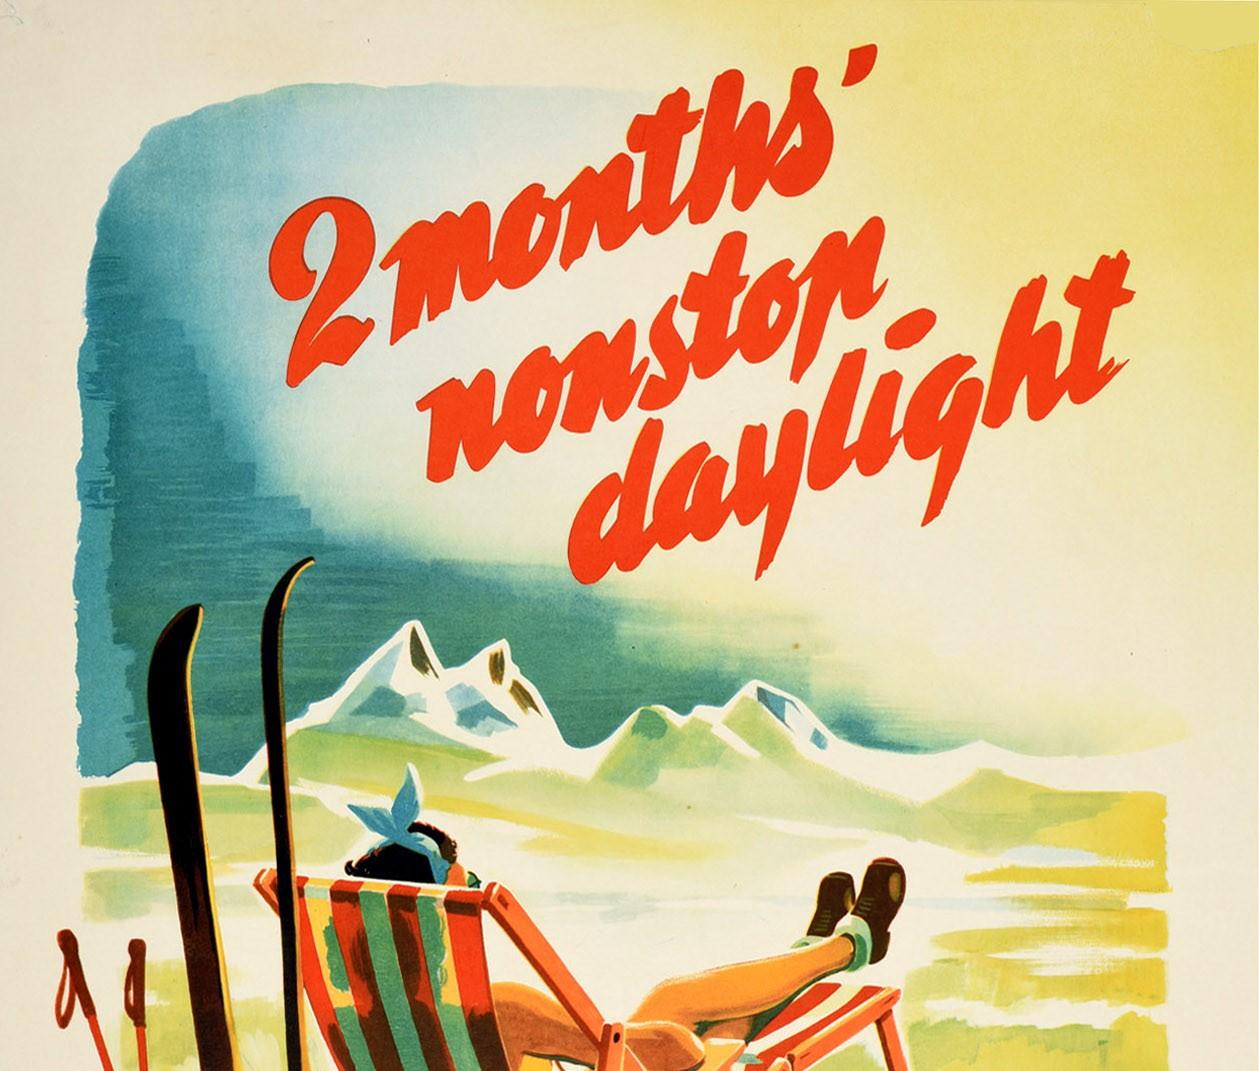 Original Vintage-Reiseplakat für Lapplandia Schweden 2 Monate nonstop Tageslicht The Midnightsun Hotel mit einem großen Bild von schneebedeckten Bergen am Horizont mit einer Dame entspannt auf einem weiß-rot gestreiften Liegestuhl auf einem Fleck